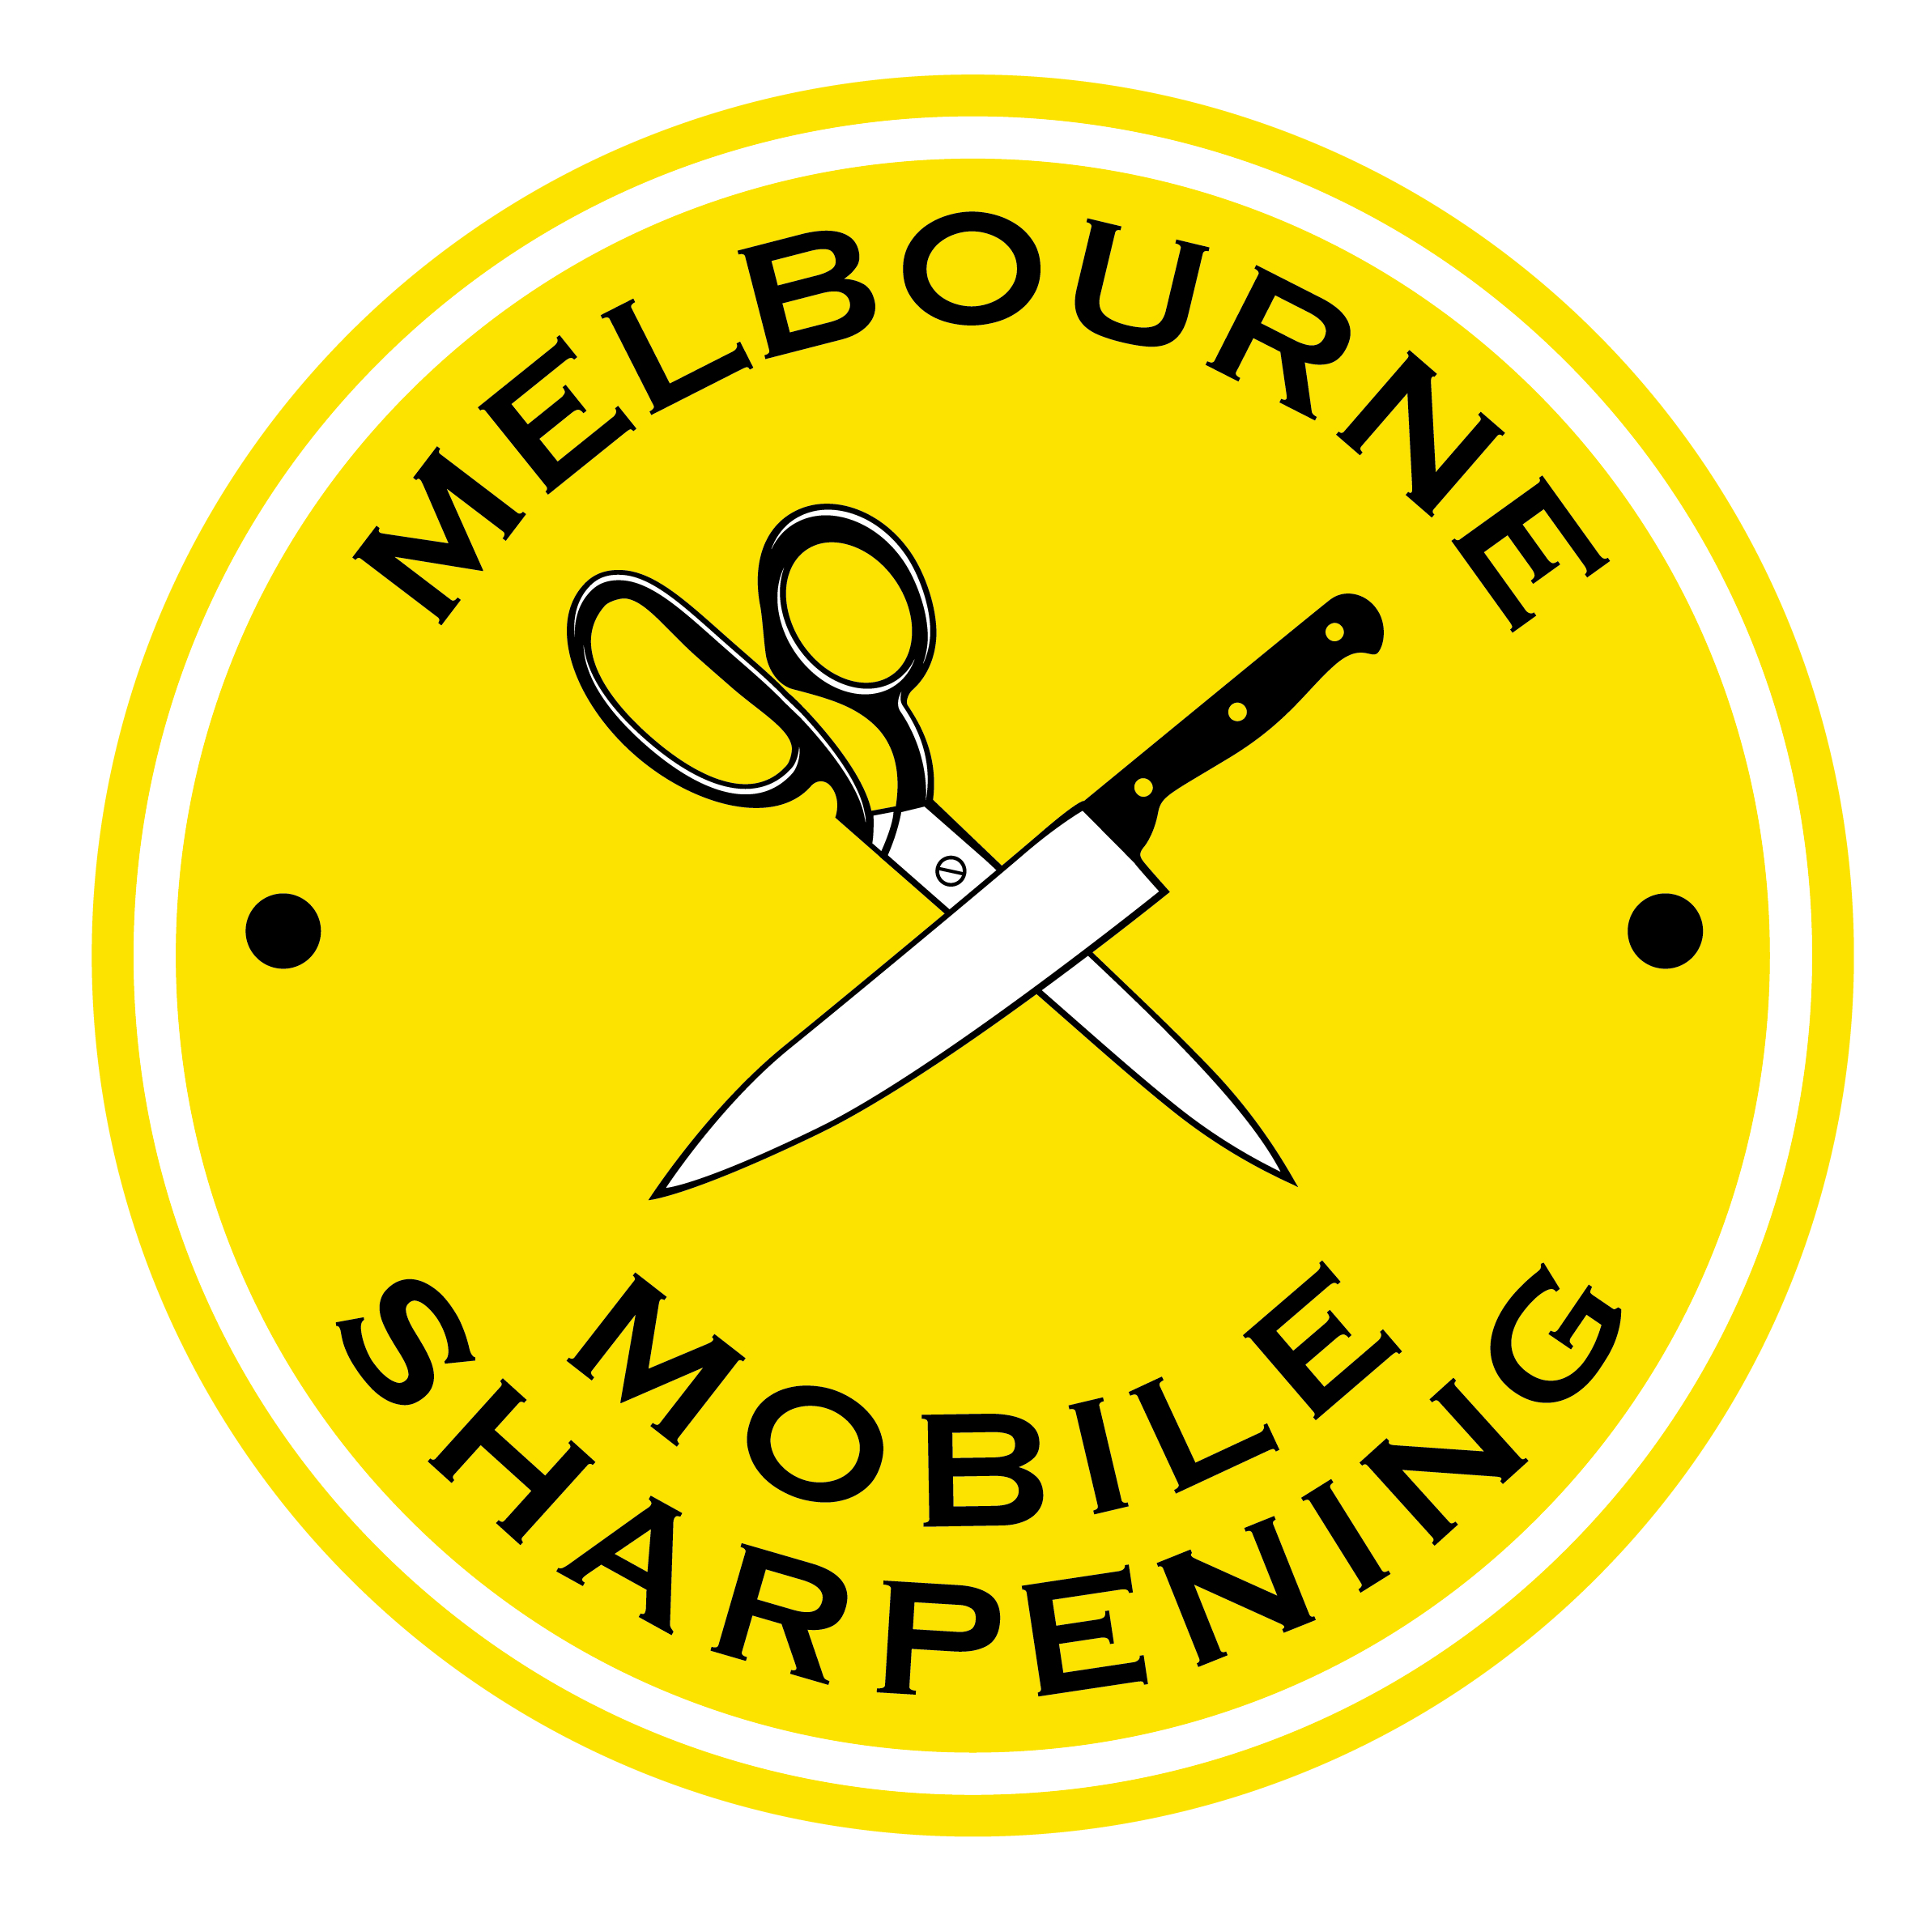 Melbourne Mobile Sharpening